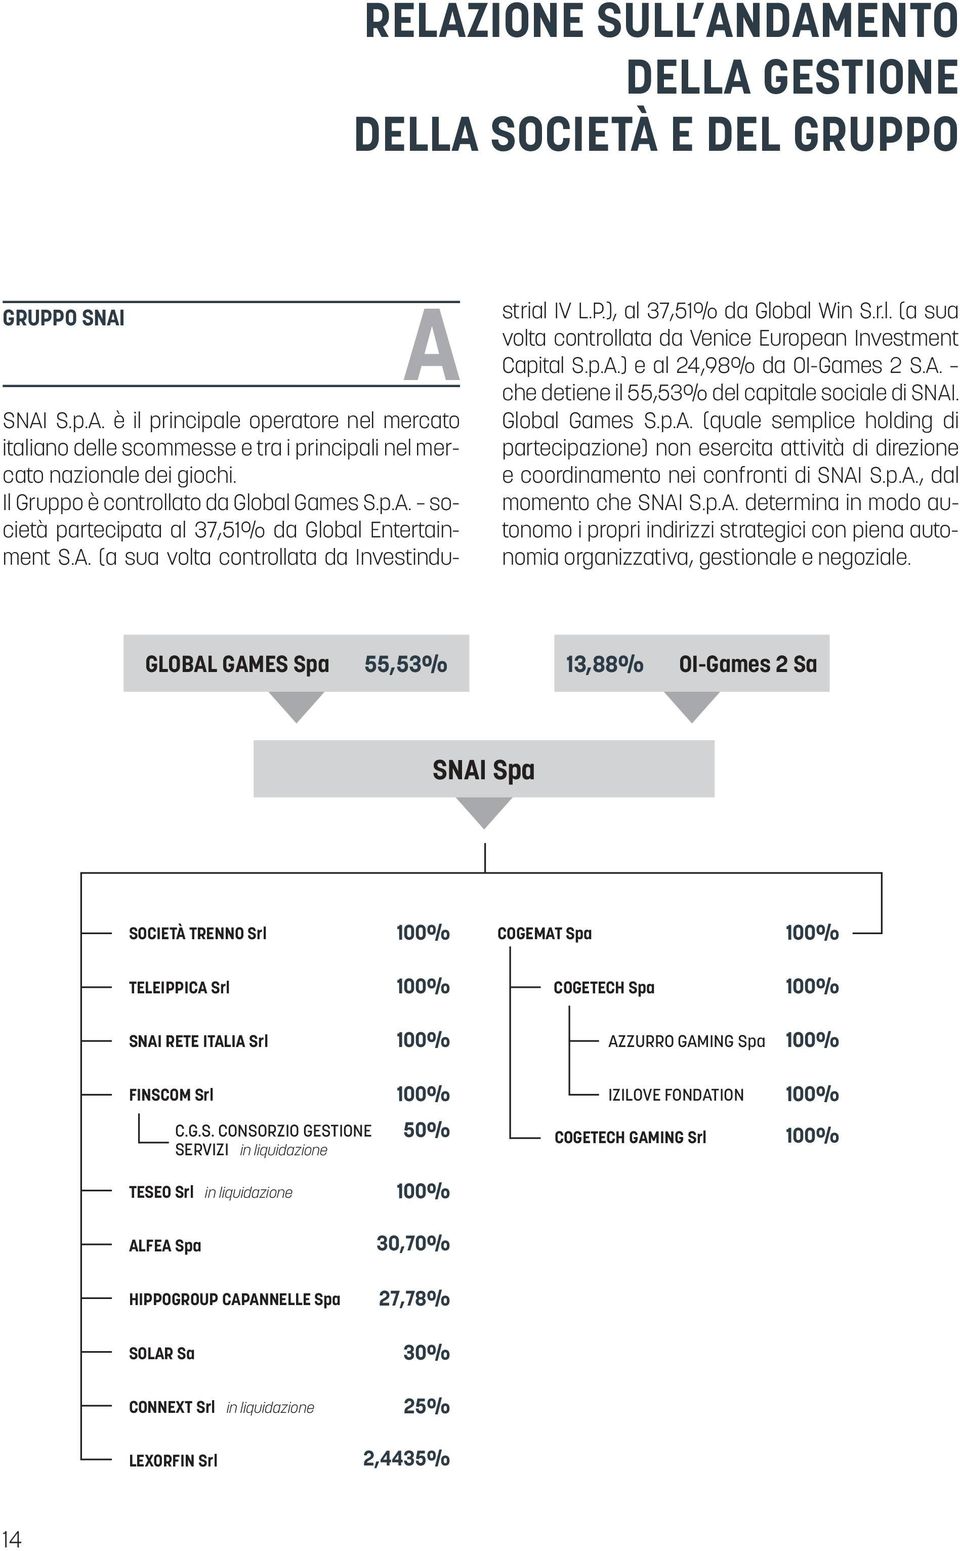 p.A.) e al 24,98% da OI-Games 2 S.A. che detiene il 55,53% del capitale sociale di SNAI. Global Games S.p.A. (quale semplice holding di partecipazione) non esercita attività di direzione e coordinamento nei confronti di SNAI S.